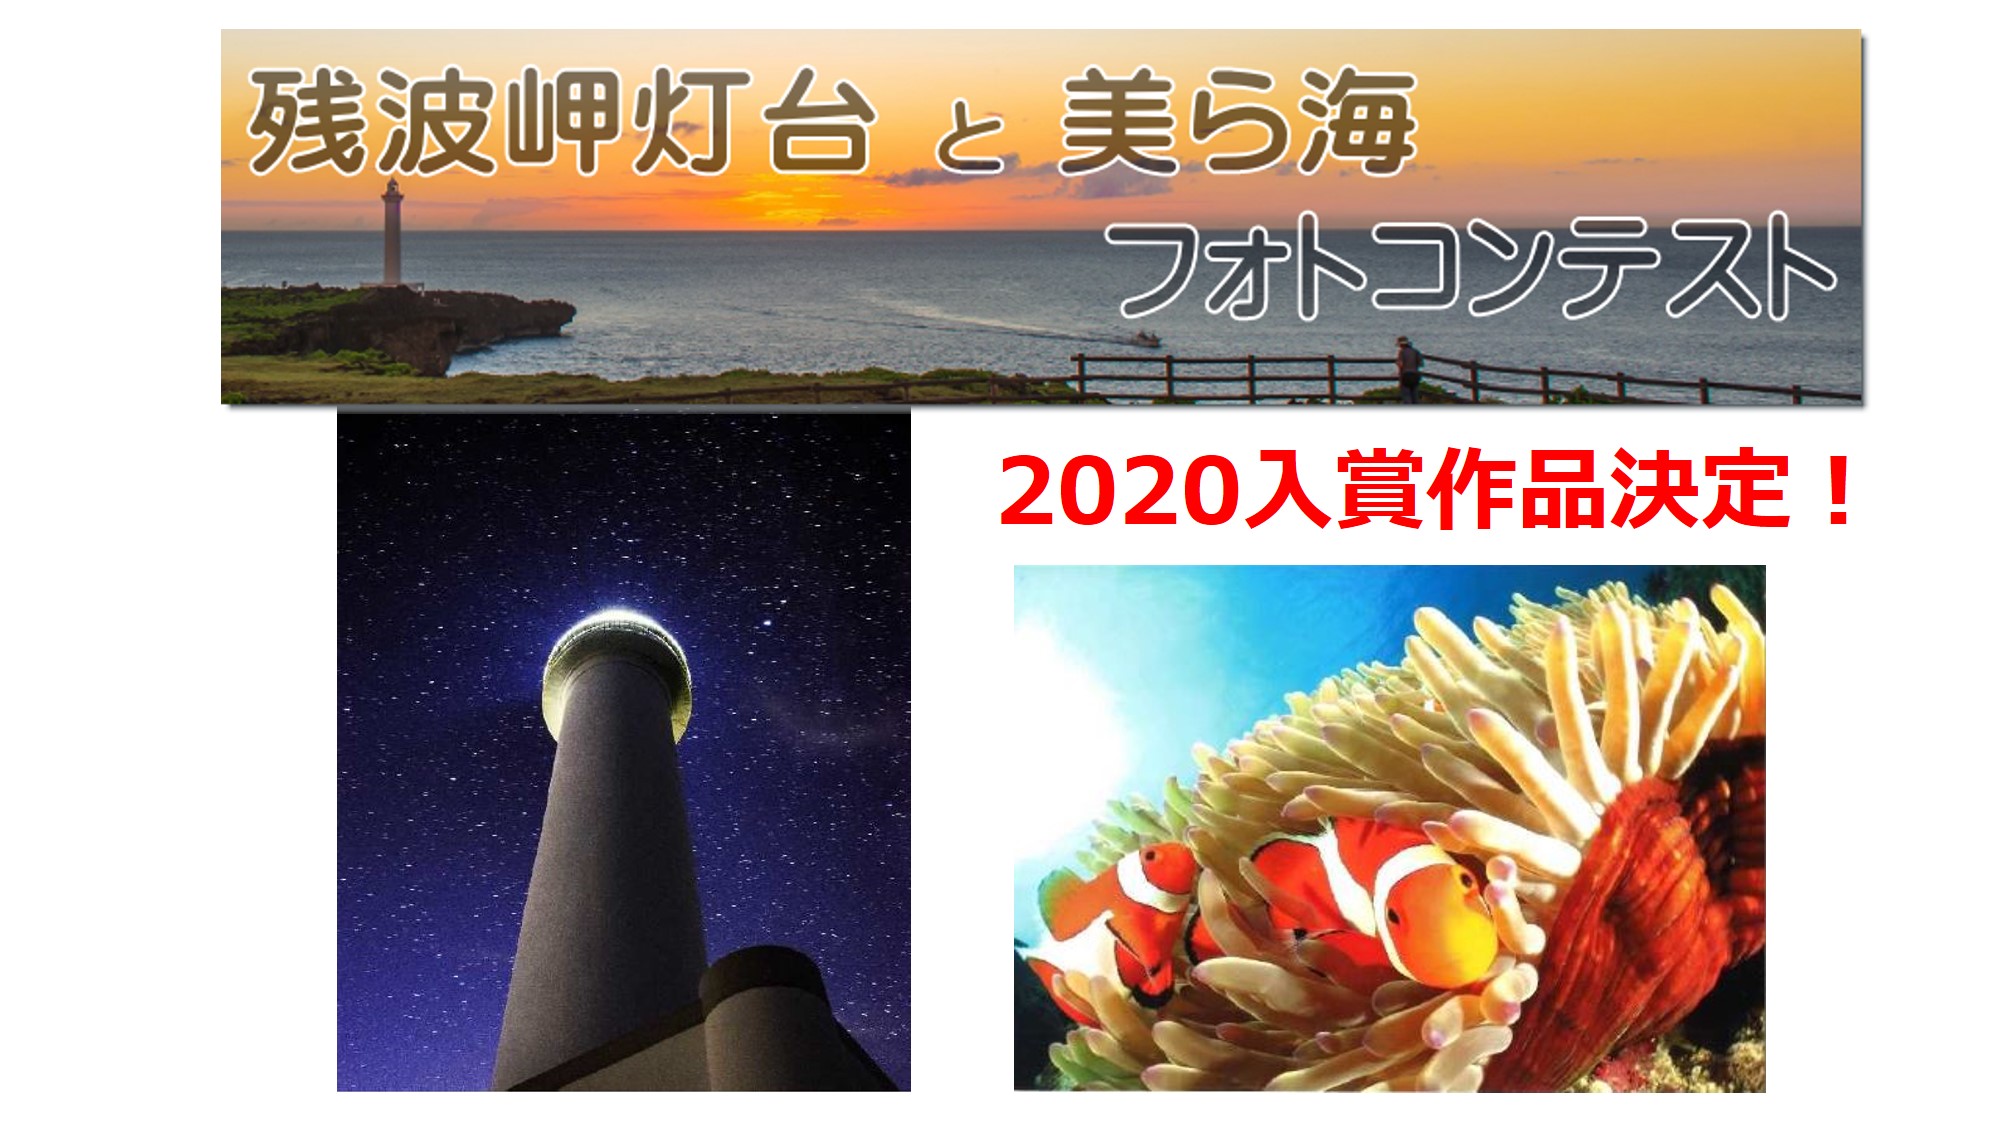 残波岬灯台と美ら海フォトコンテスト2020